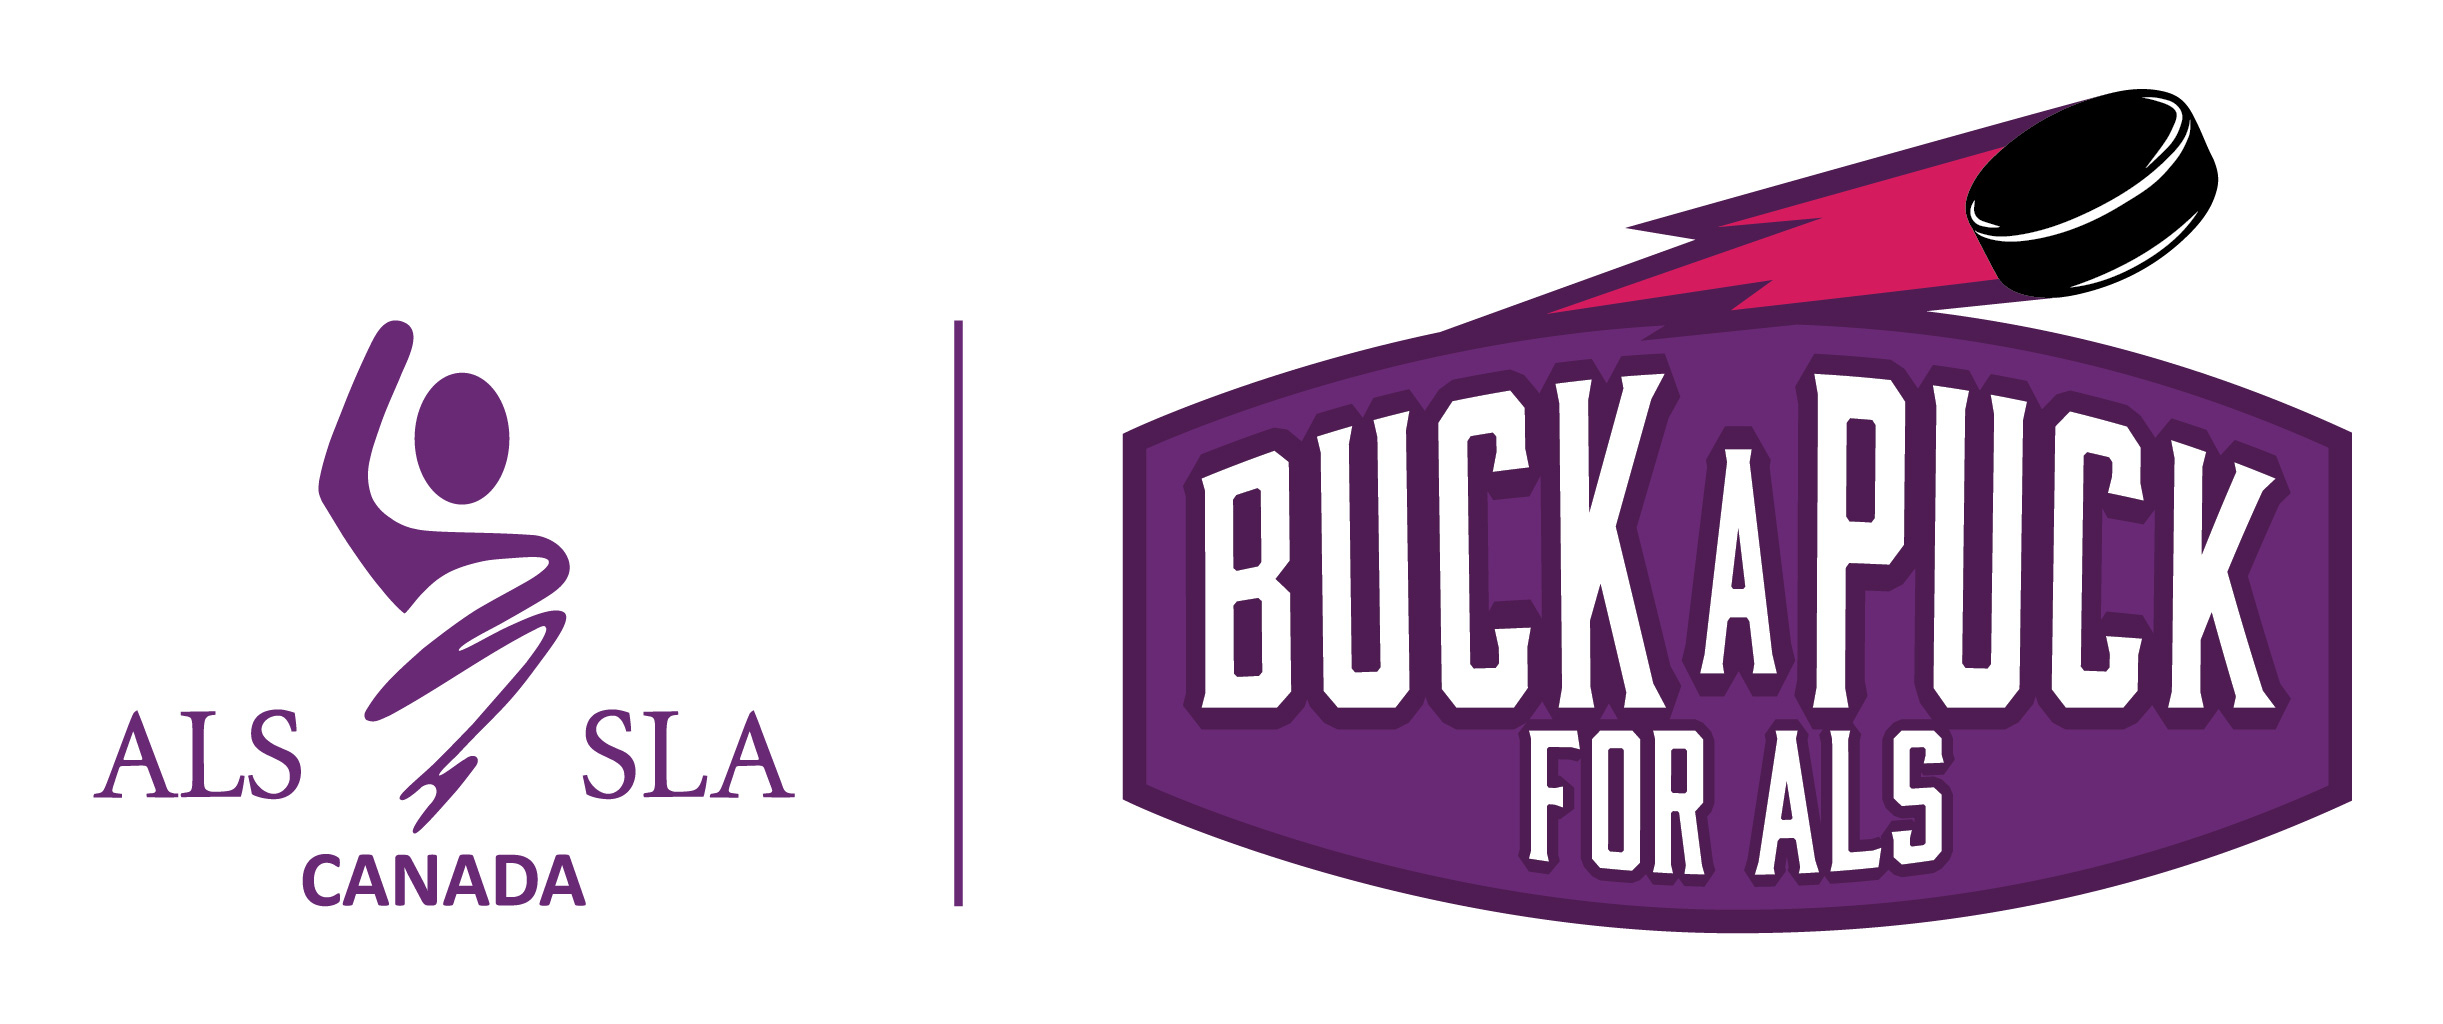 ALS Canada Buck-A-Puck for ALS Logo